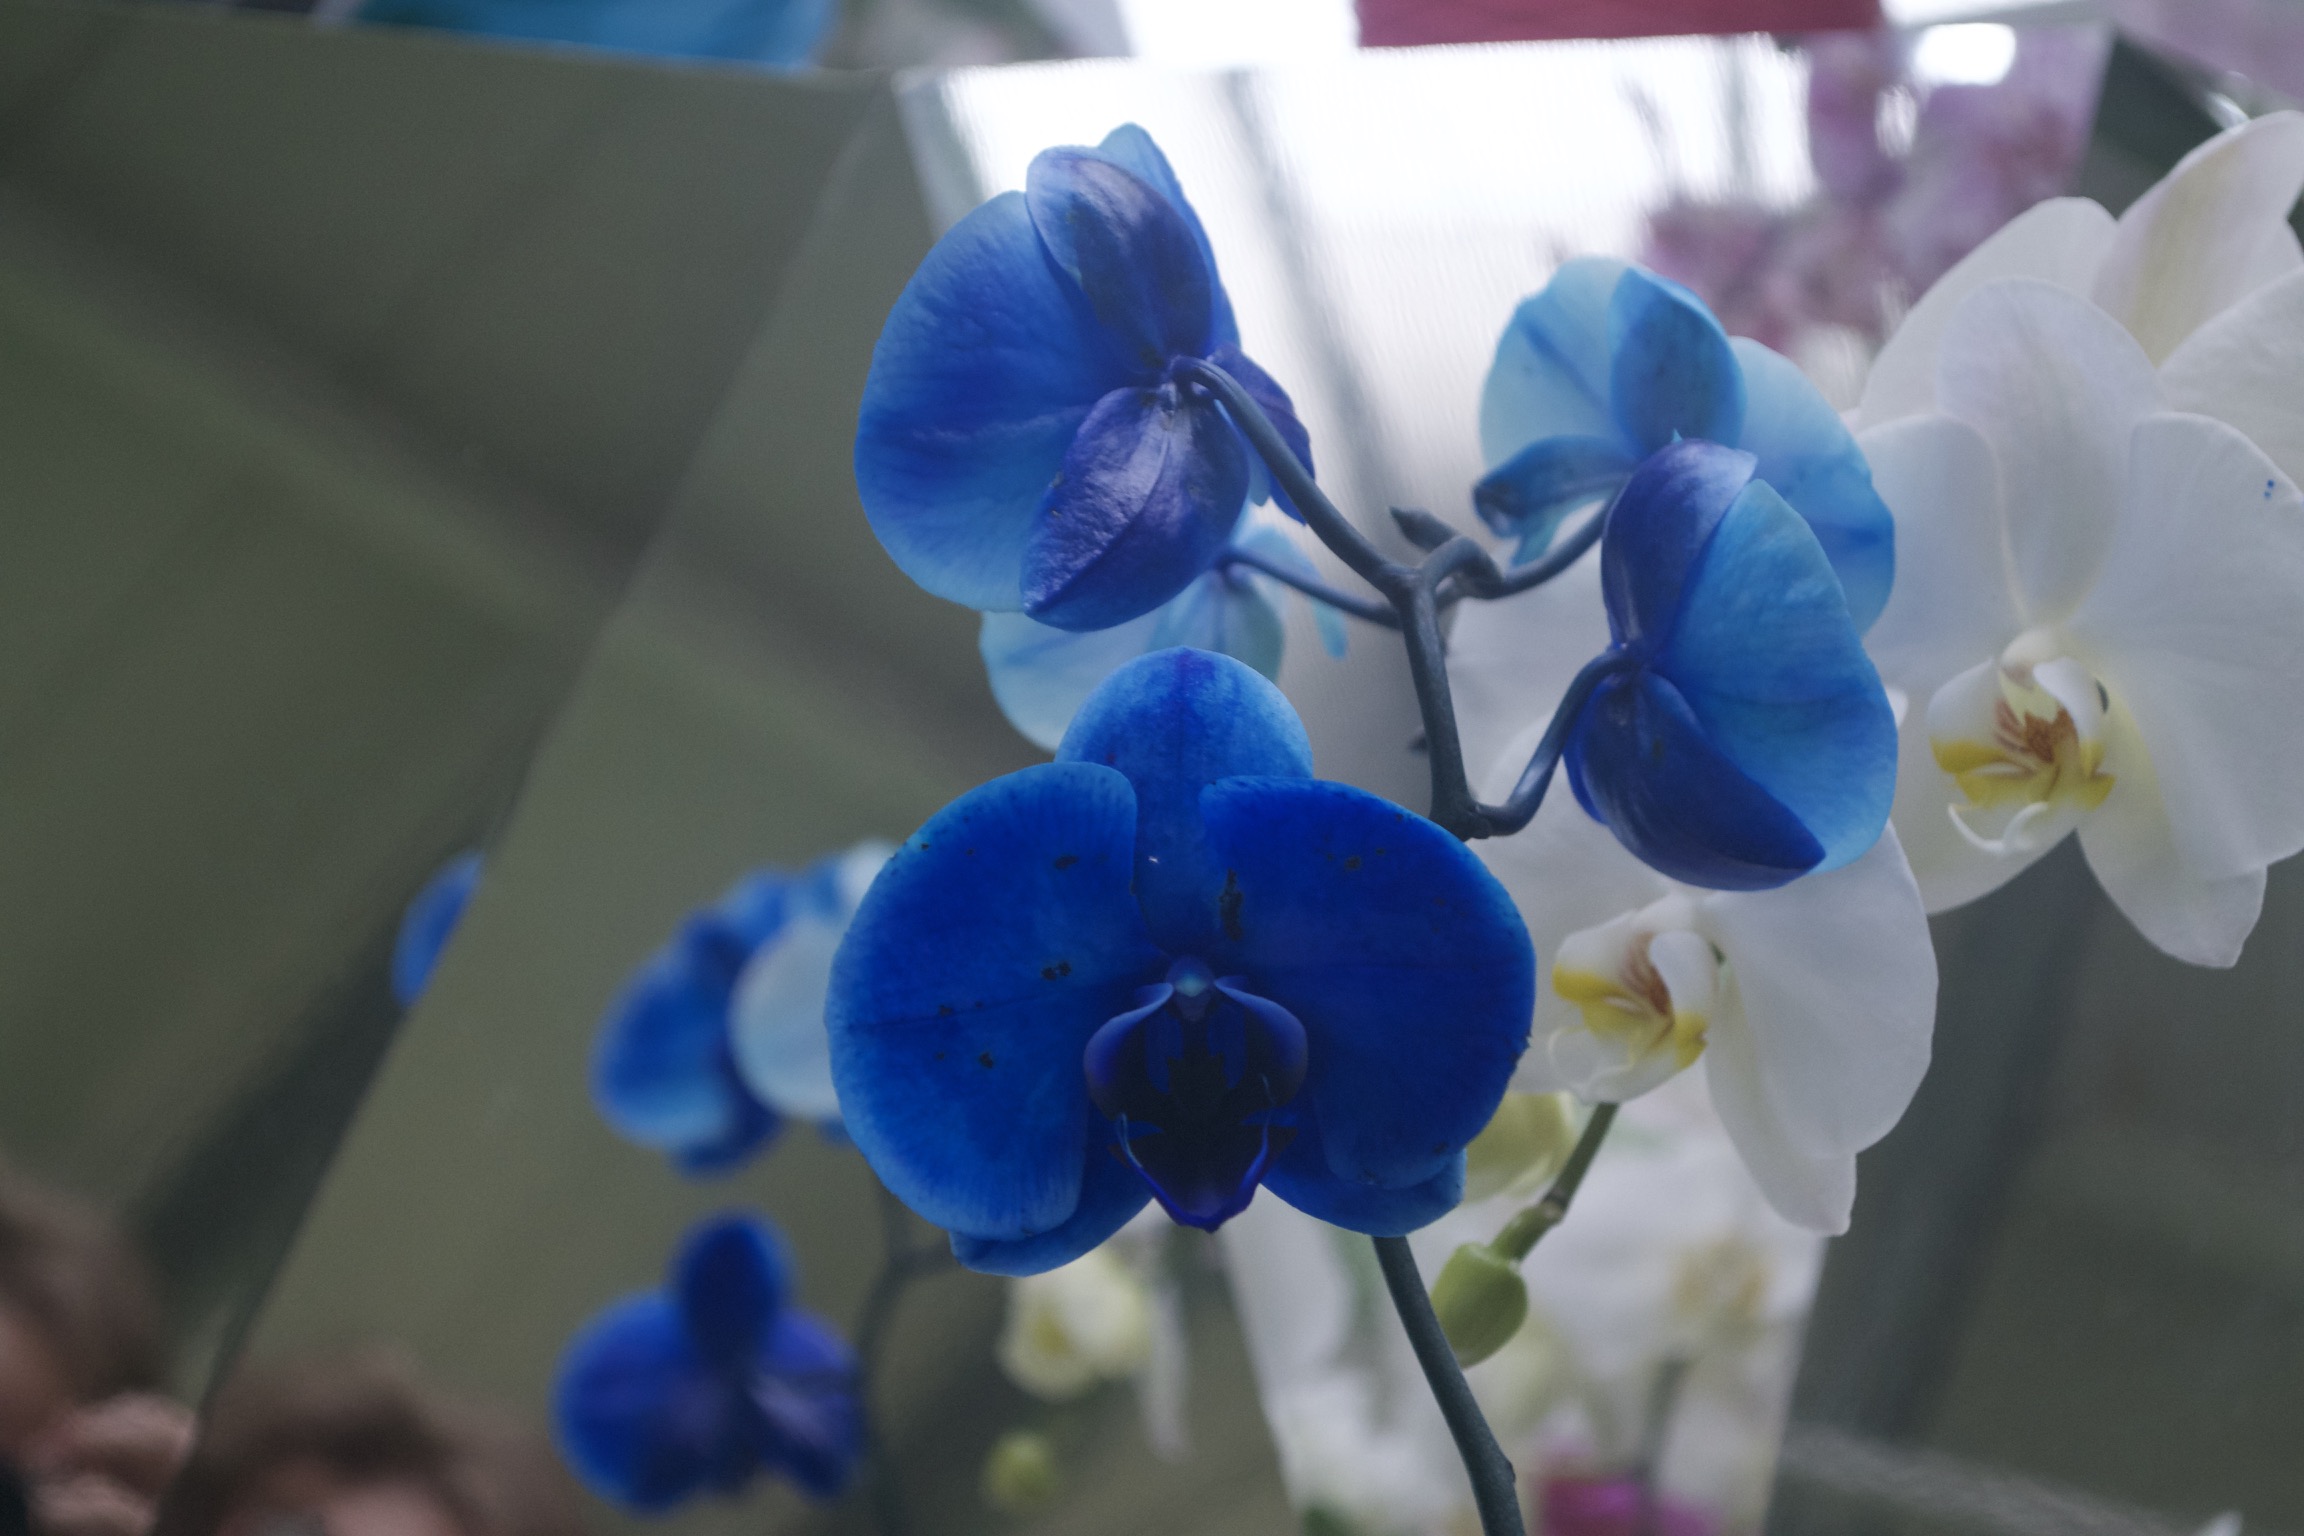 A closeup of a deep blue orchid flower.